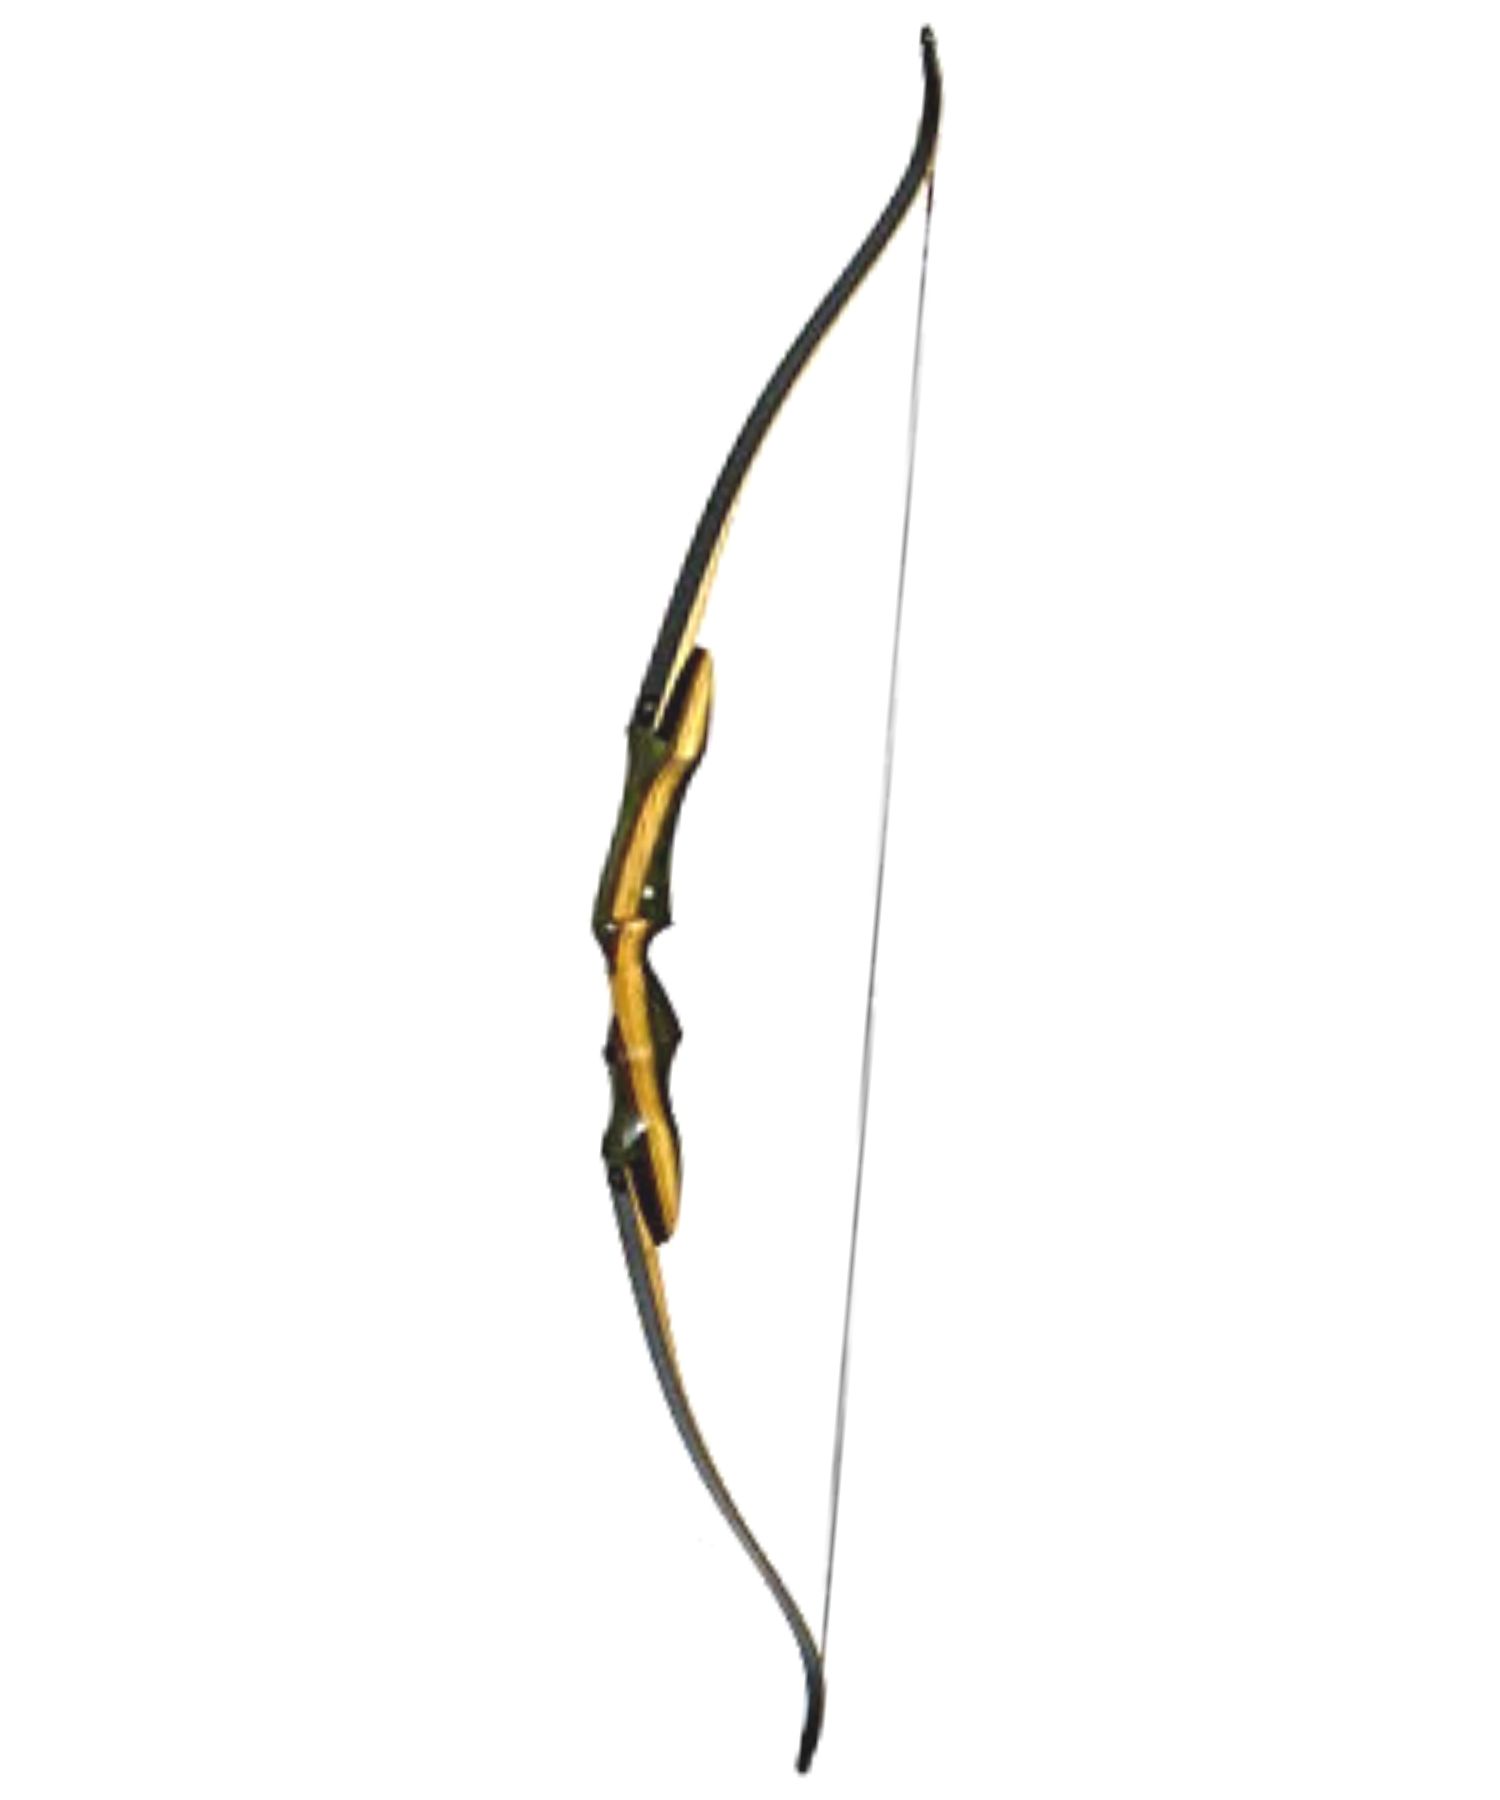 Southwest Archery Spyder Takedown Recurve Bow